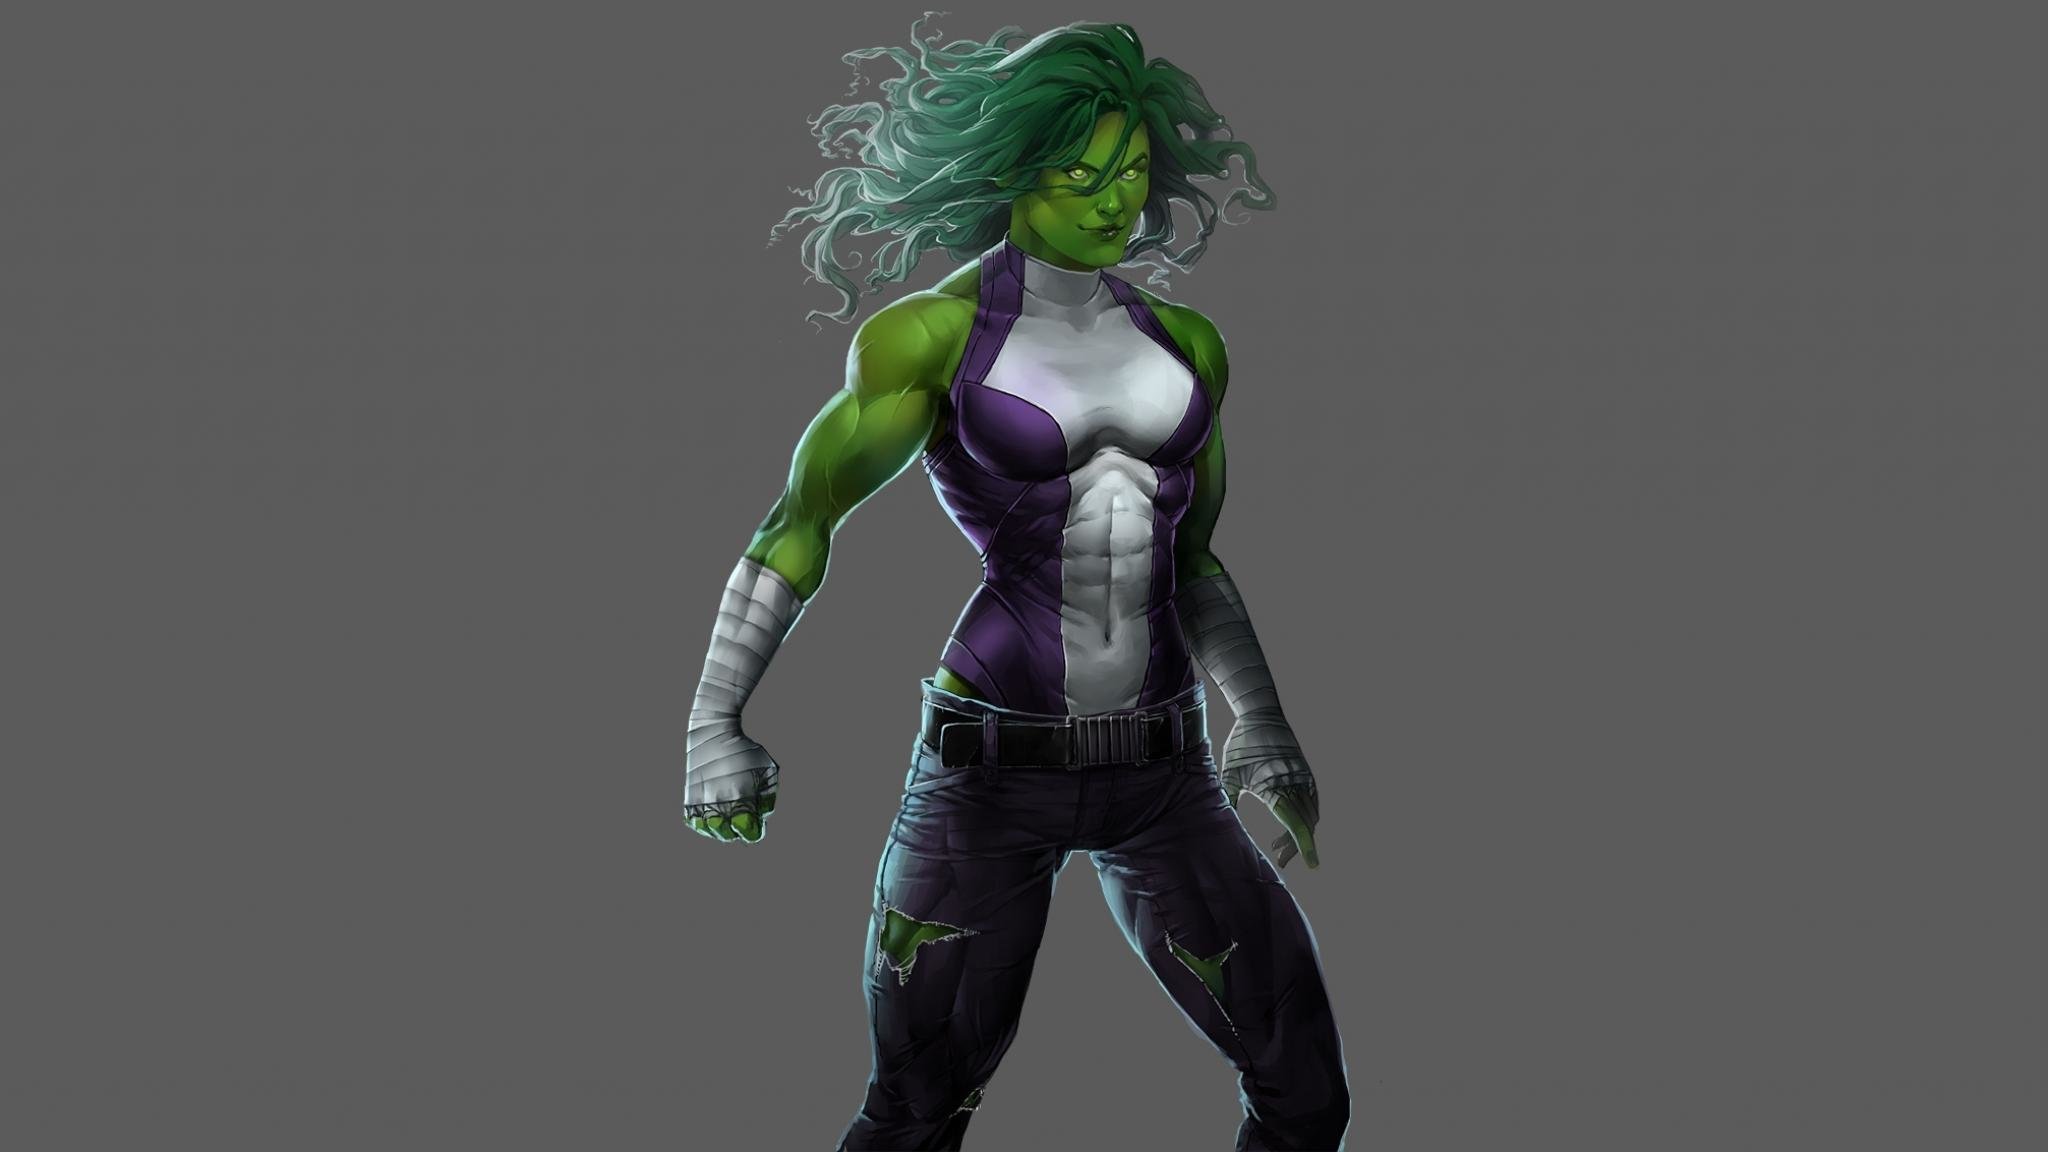 Best She-Hulk wallpaper ID:162025 for High Resolution hd 2048x1152 desktop